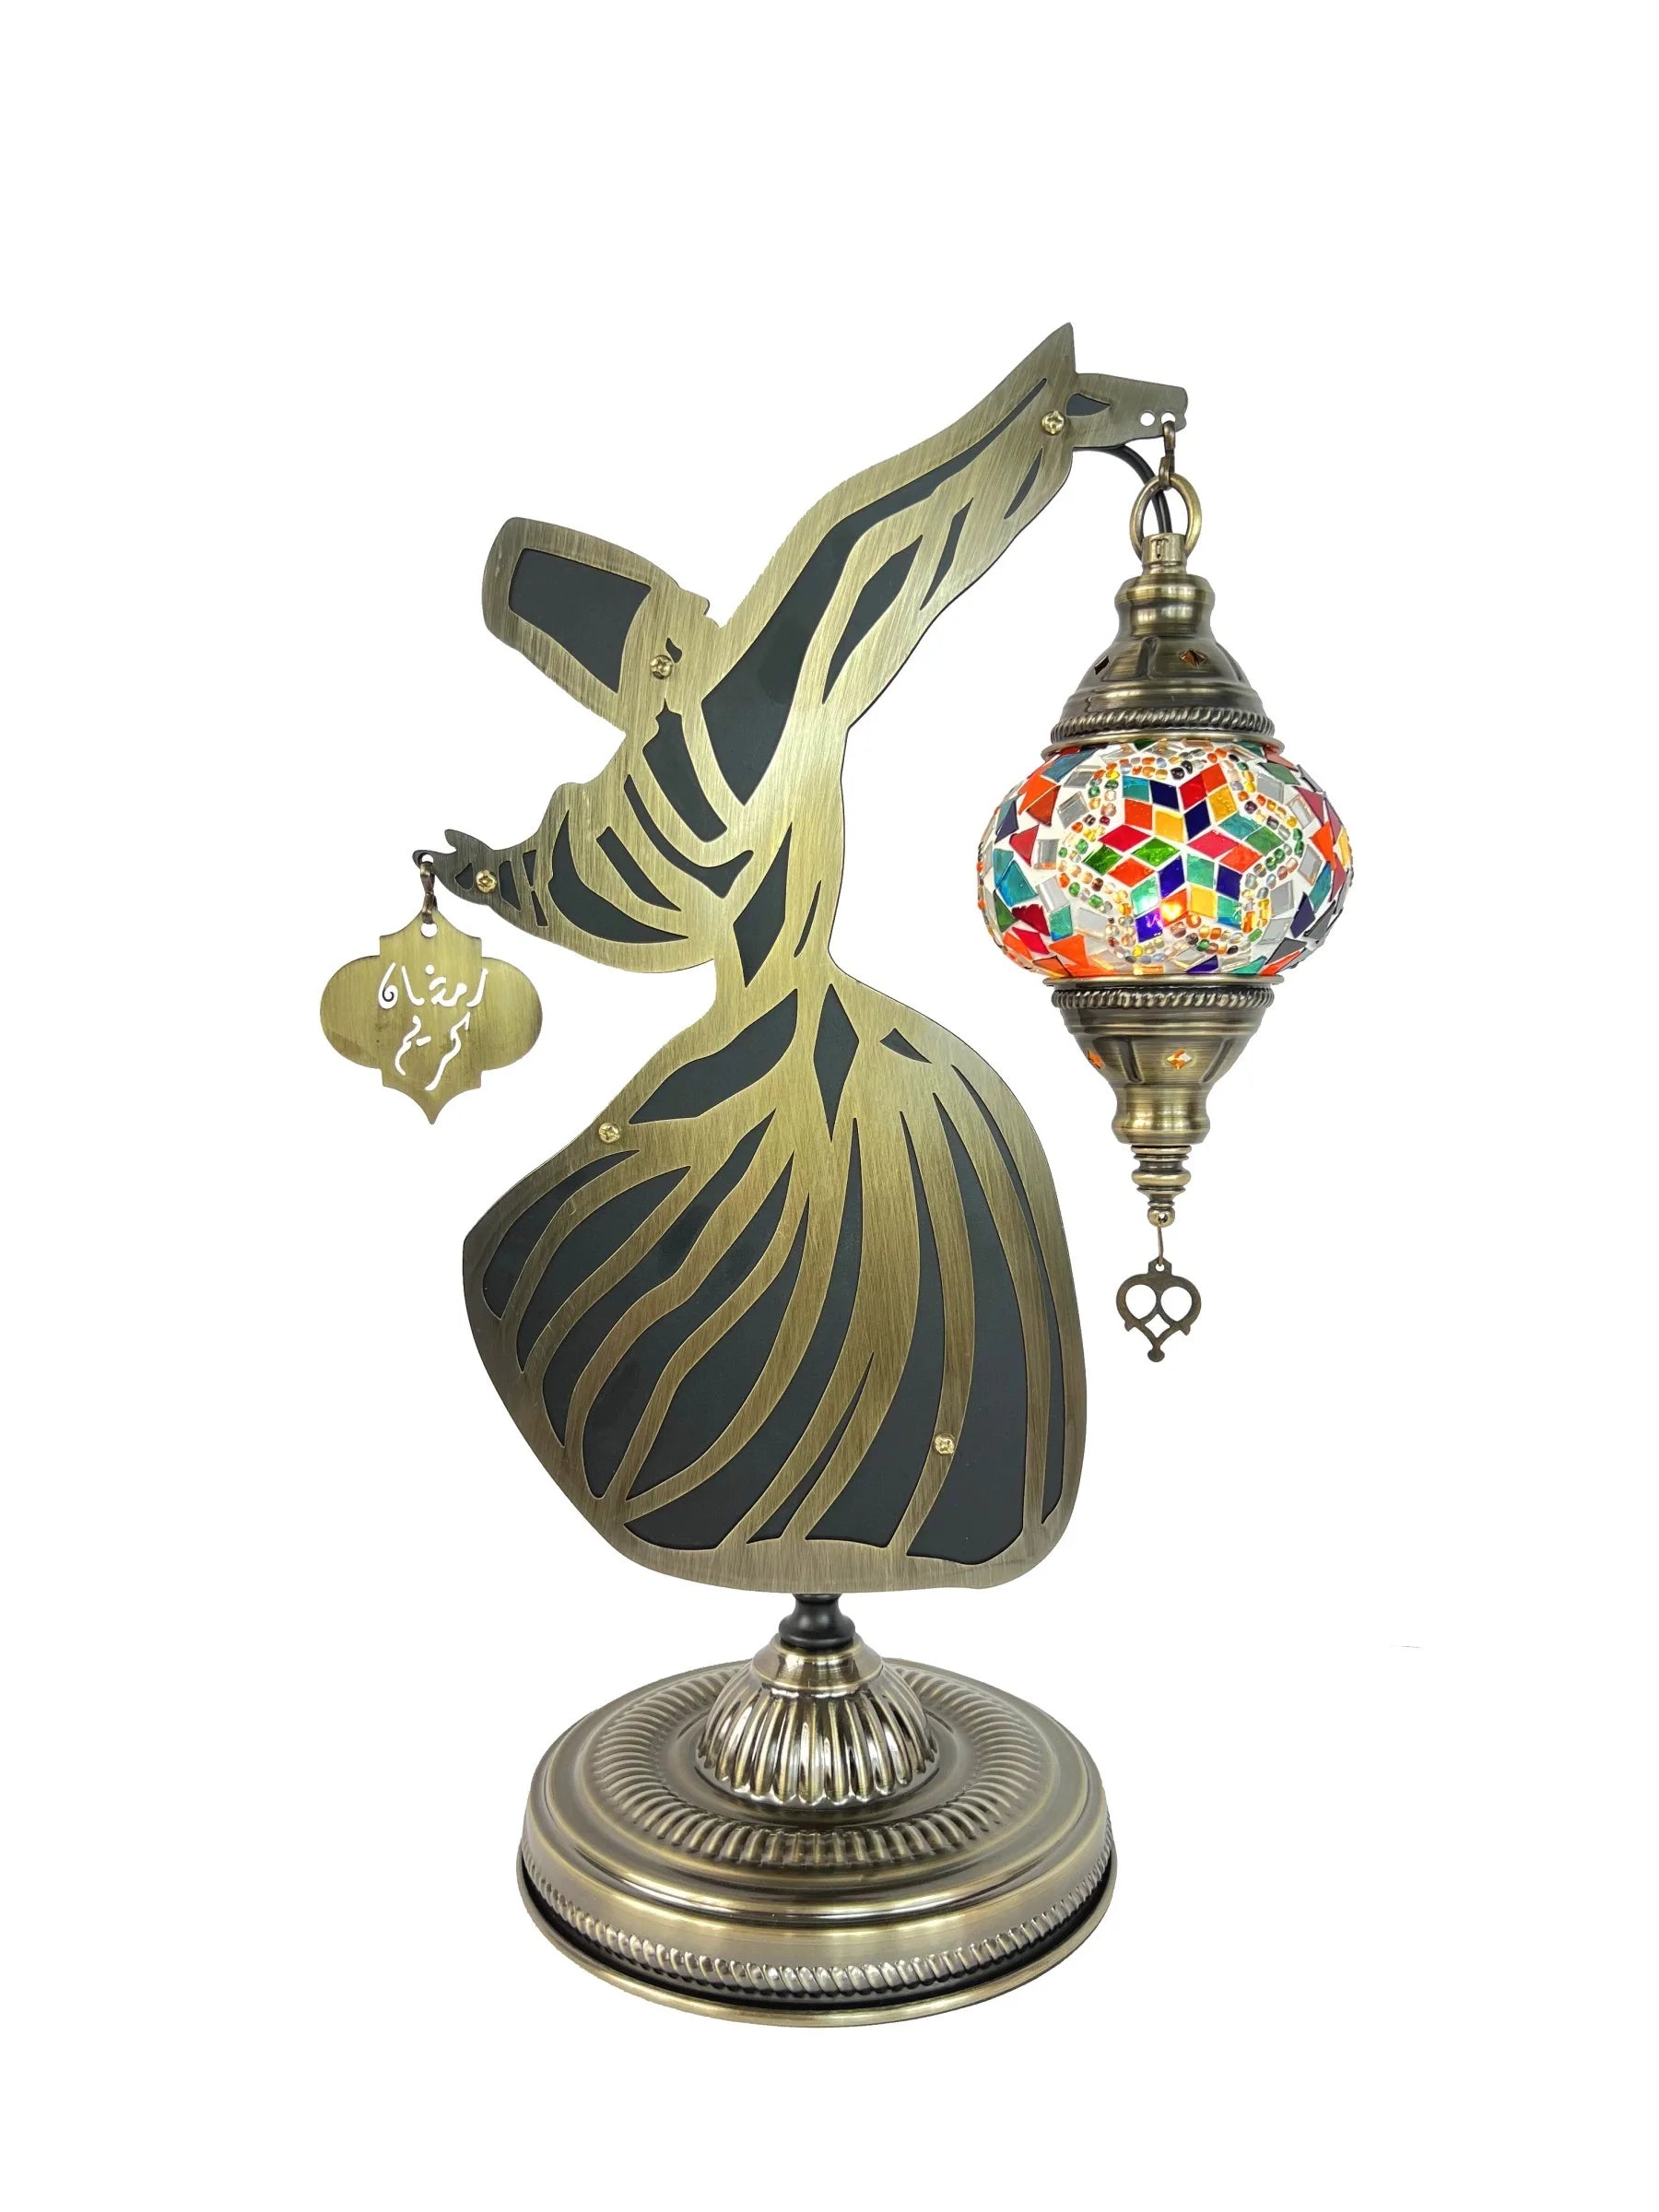 Monk Dancer Mosaic Table Lamp Vintage Art Deco Handcrafted Lamparas De